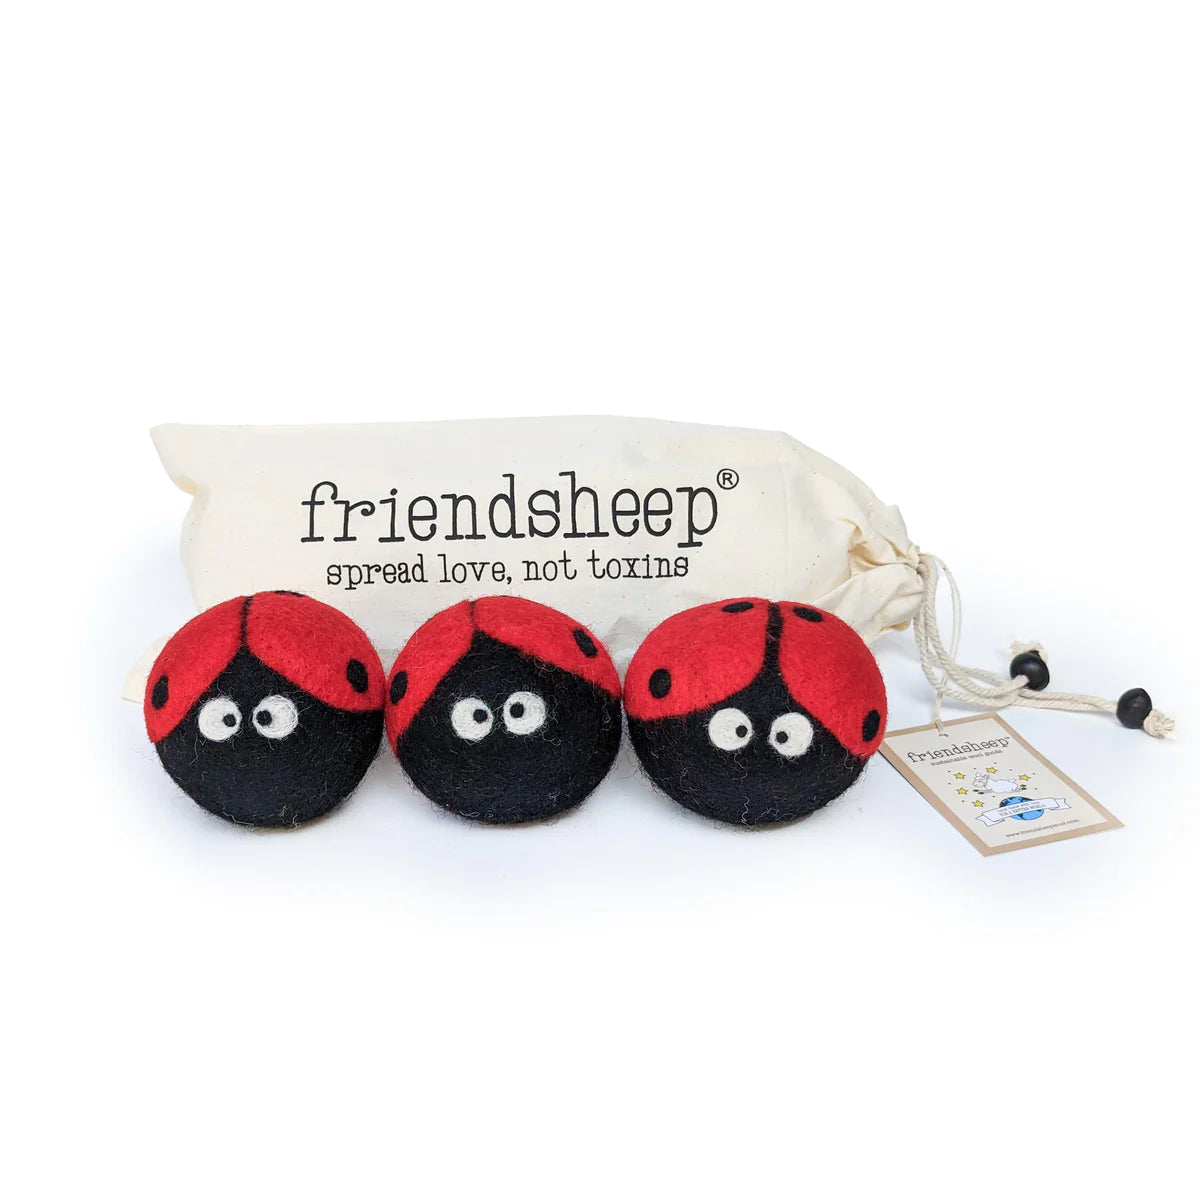 Friendsheep - Eco Dryer Ball Ladybug (Set of 3)